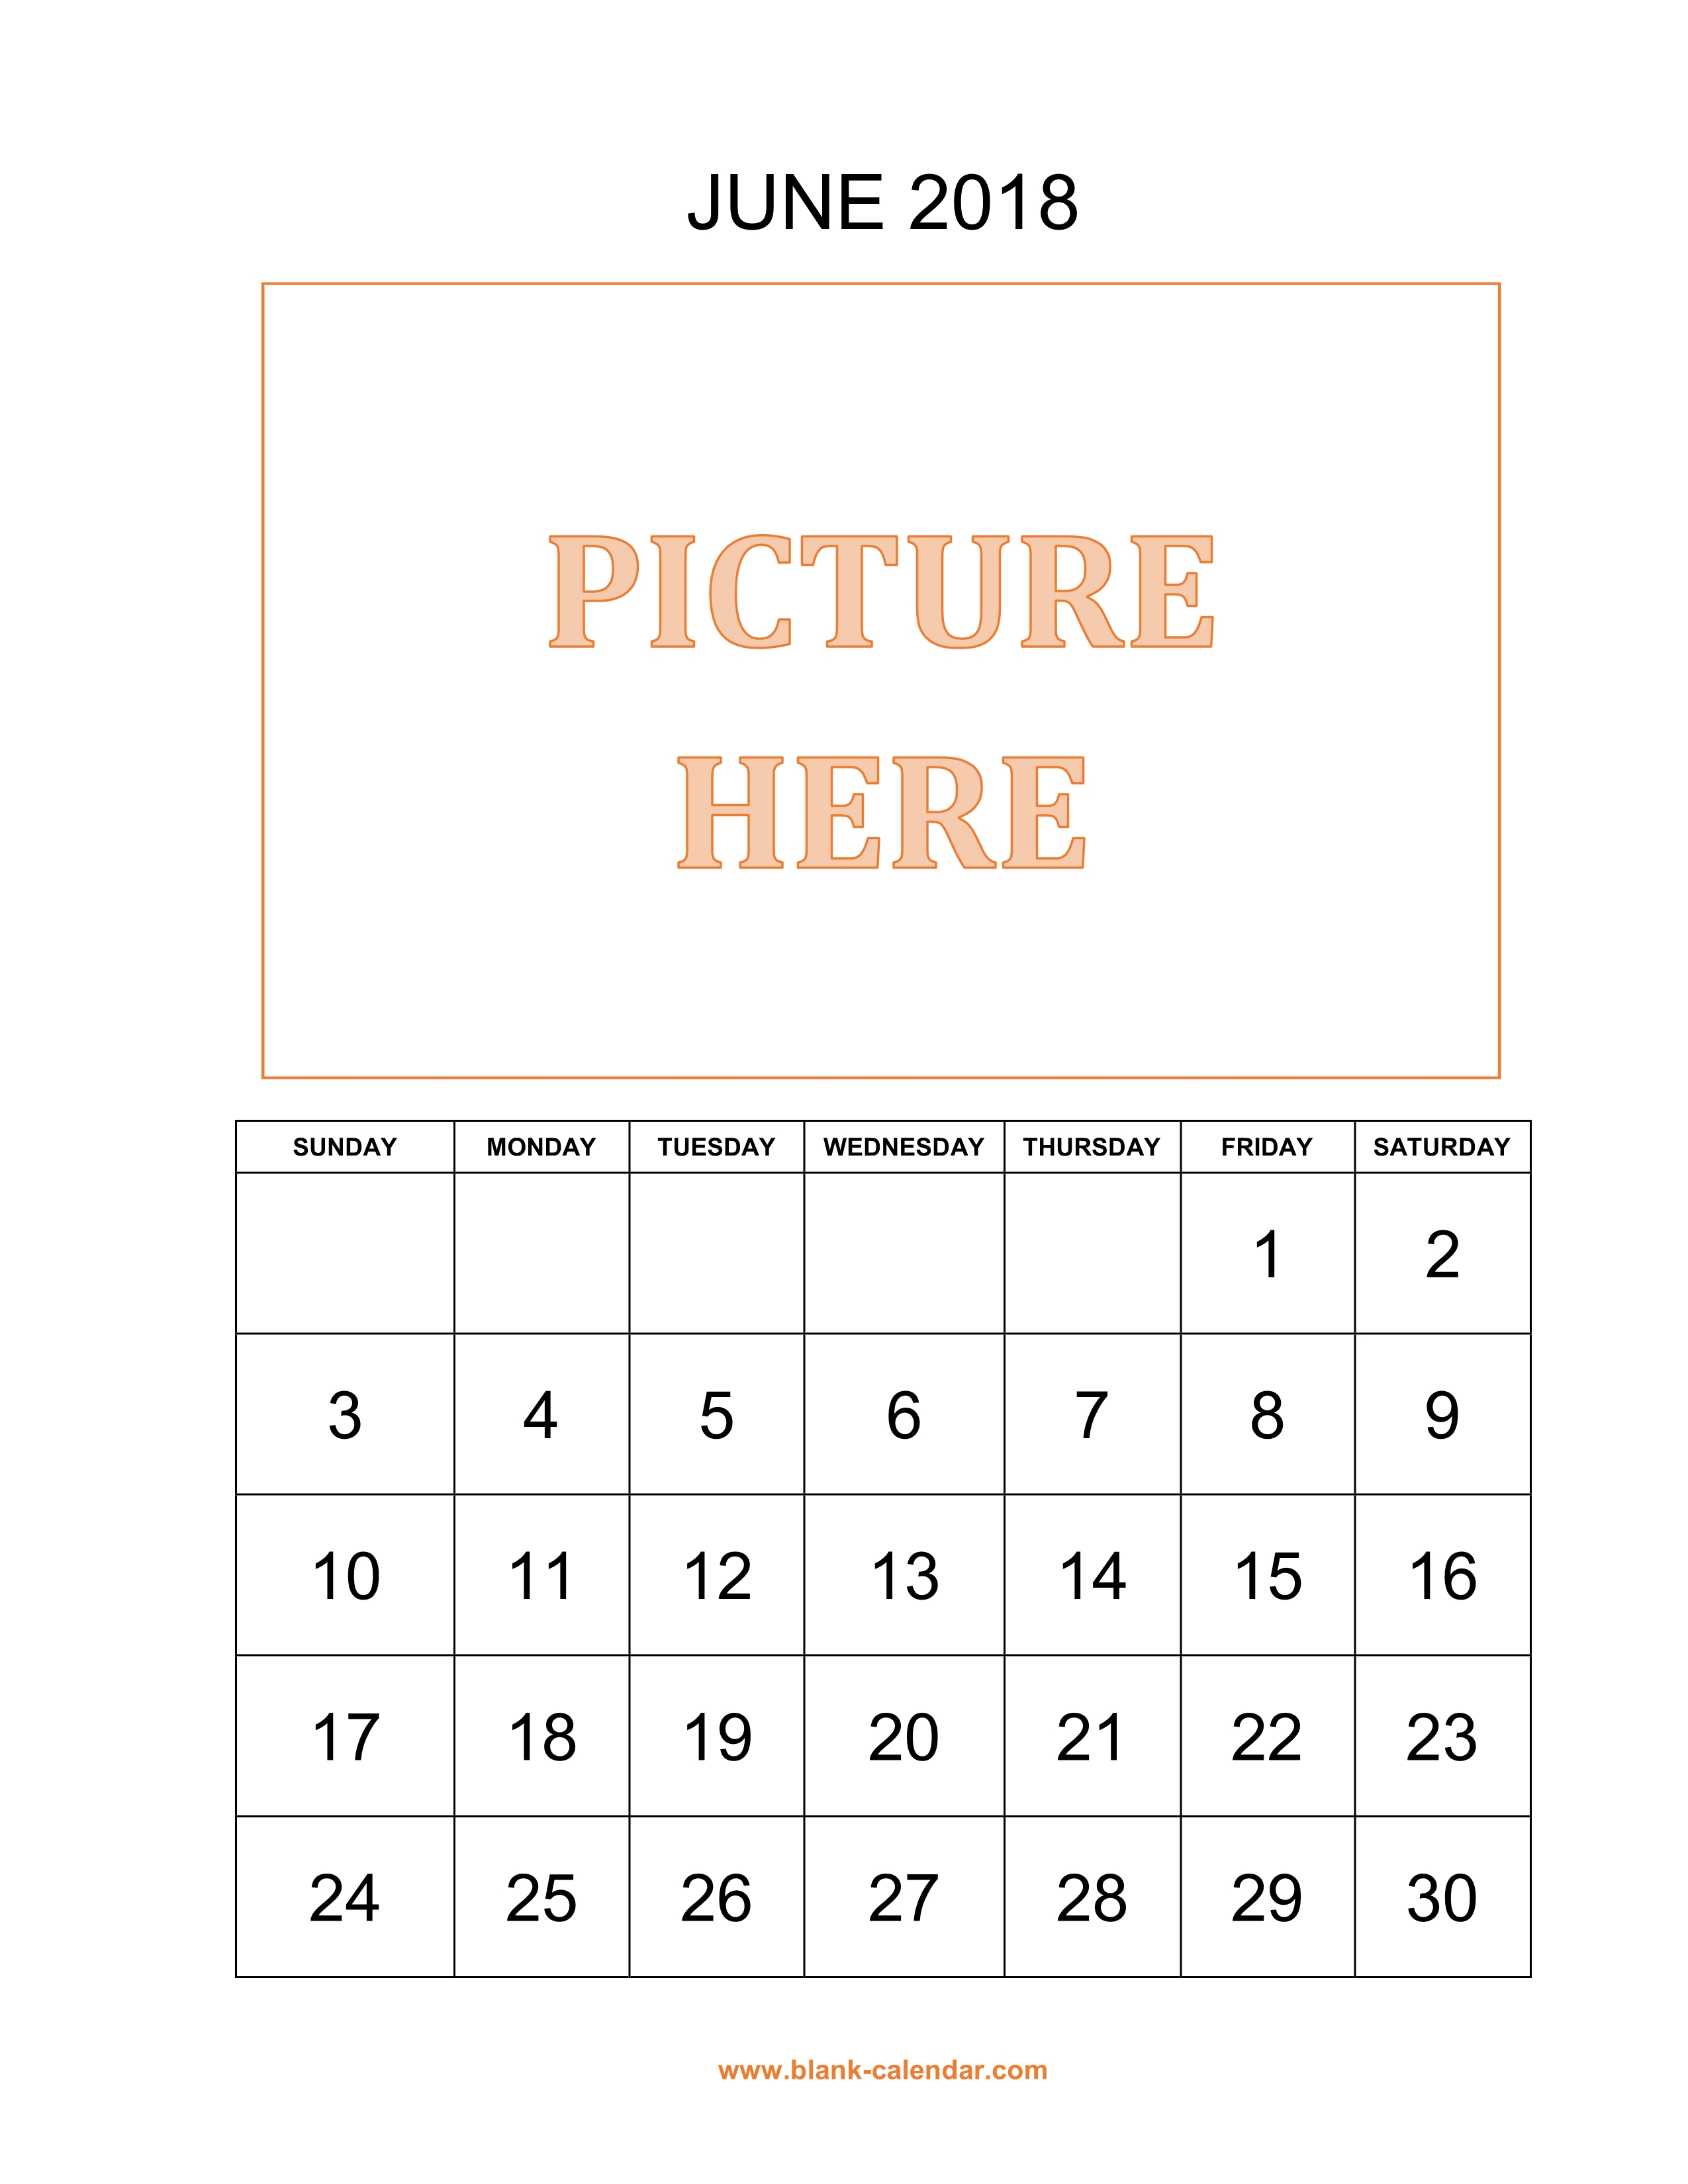 June 2018 Calendar June 2018 Calendar June 2018 Calendar Printable Xwrfle Gsysbh